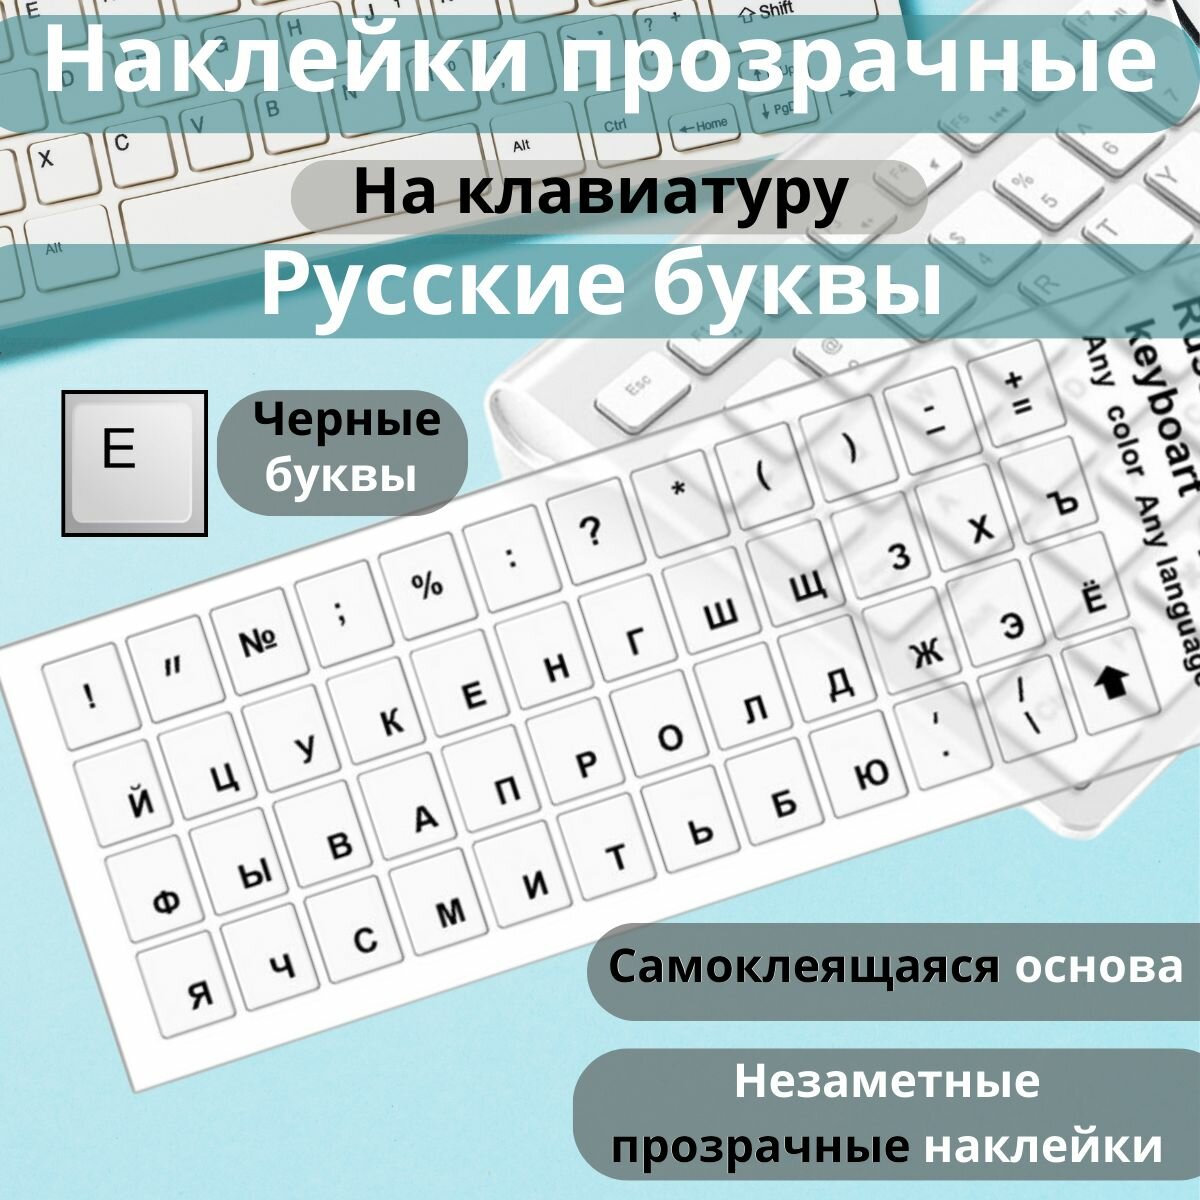 Наклейки прозрачные полимерные на белую клавиатуру русская раскладка с русскими буквами русификация RUS шрифт чёрный